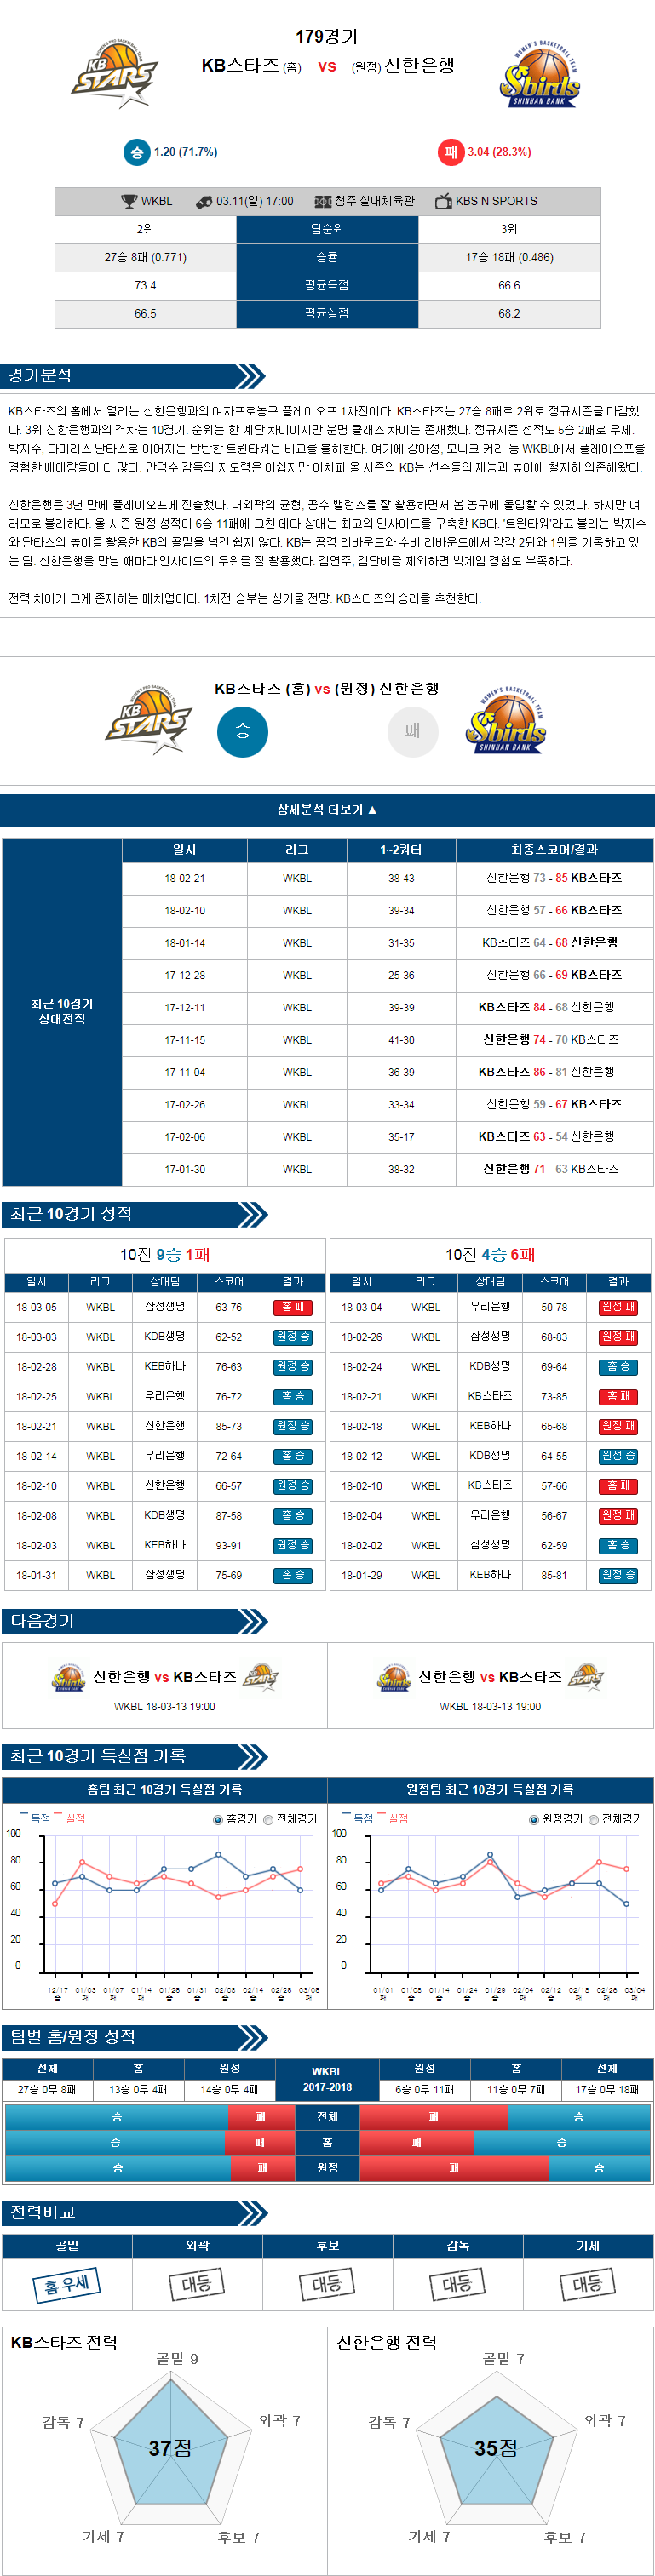 03-11 [WKBL] 17:00 KB스타즈 vs 신한은행